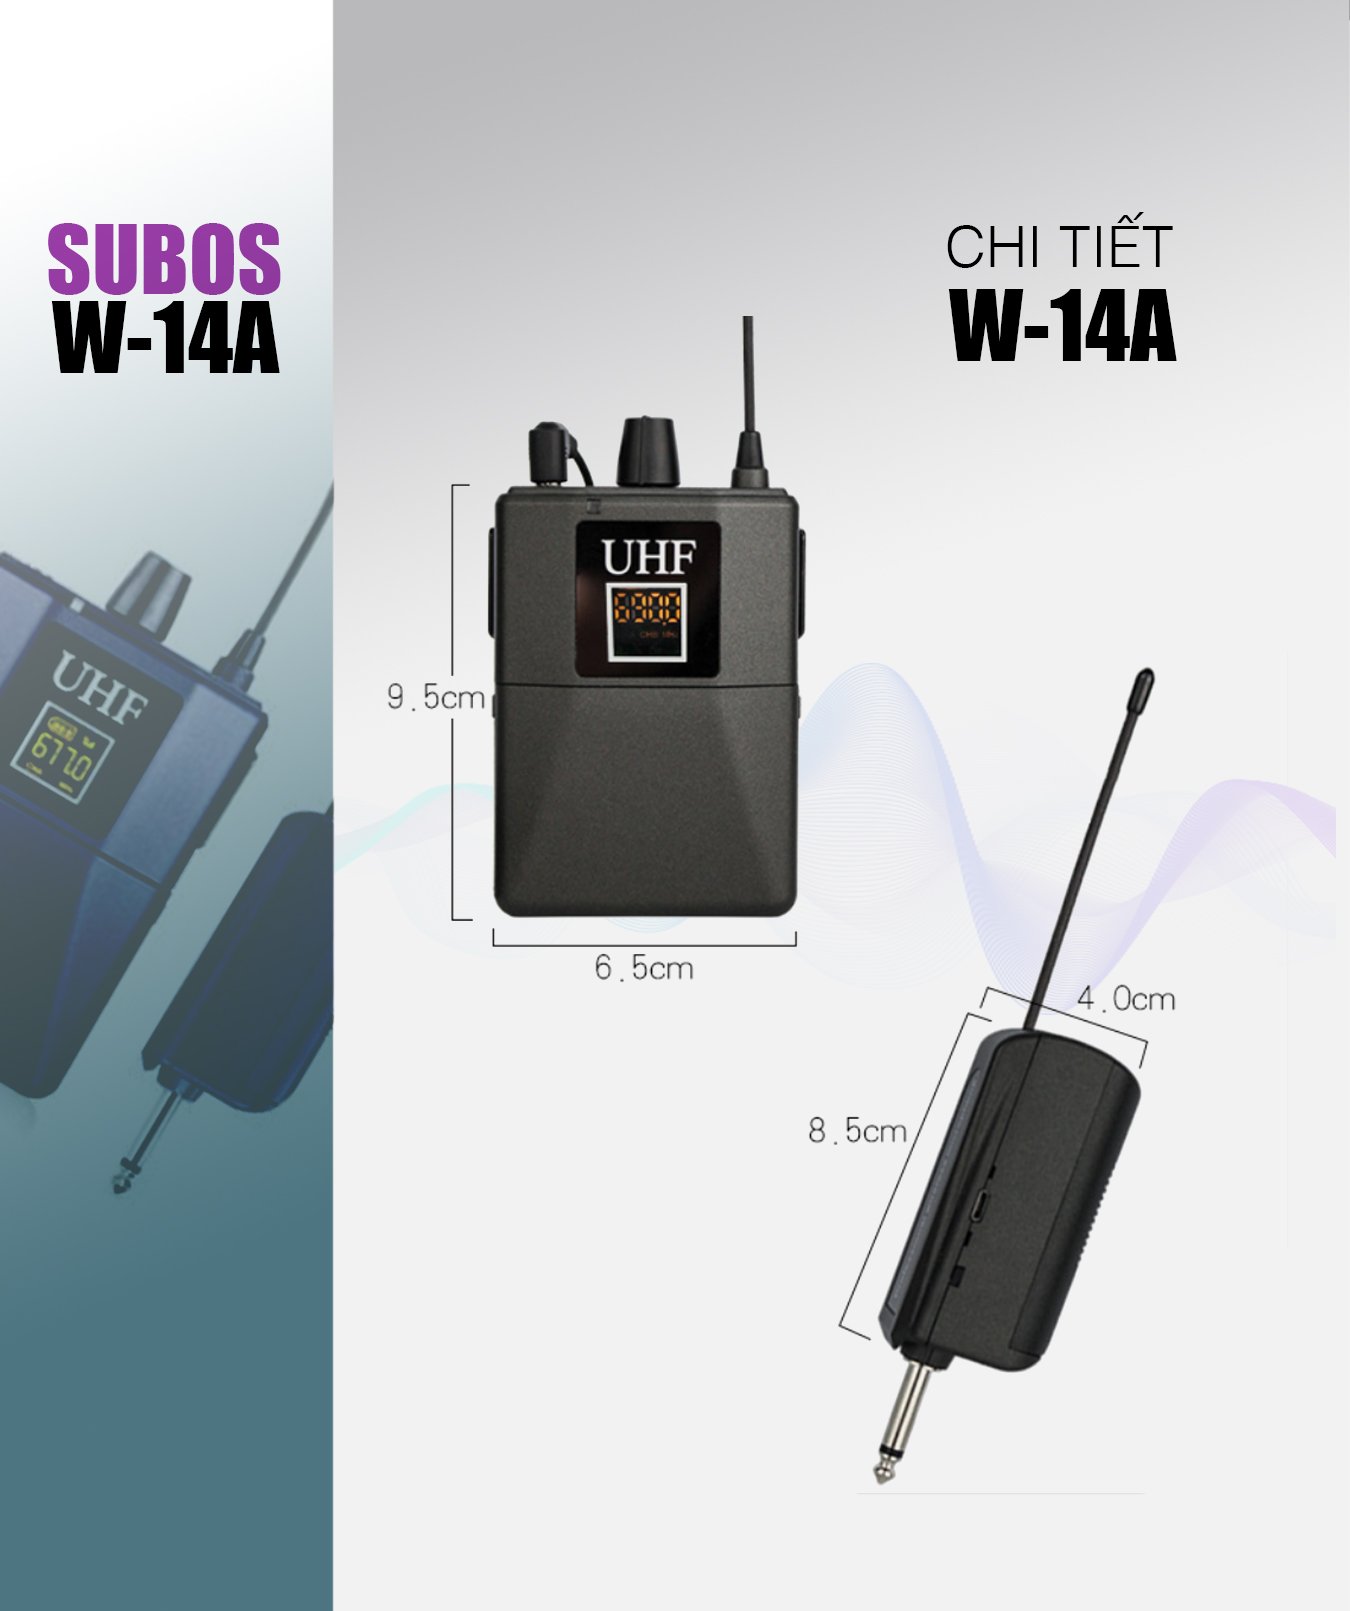 Micro không dây Subos W-14A - Micro đeo tai UHF hỗ trợ giảng dạy, thuyết trình, livestream - Phạm vi rộng đến 25m, nhạy, chống hú tốt - Kết nối được hầu hết các thiết bị âm thanh sound card, amply, mixer, loa kéo ... - Hàng nhập khẩu 5